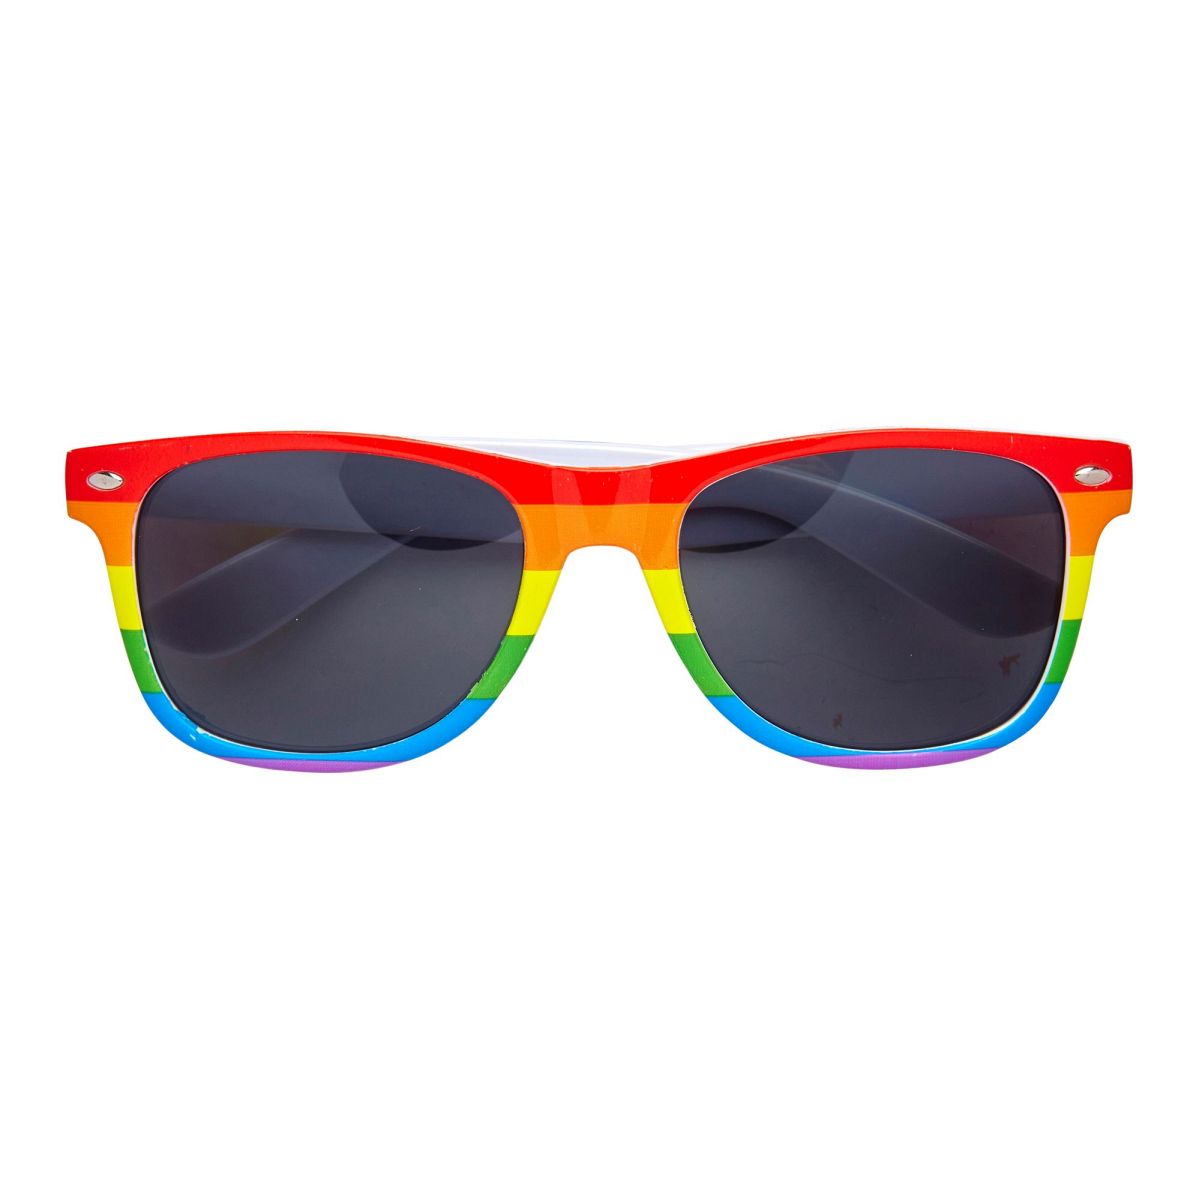 Regenbogenbrille, bunte Brille, Sonnenbrille, Fasching, Festival